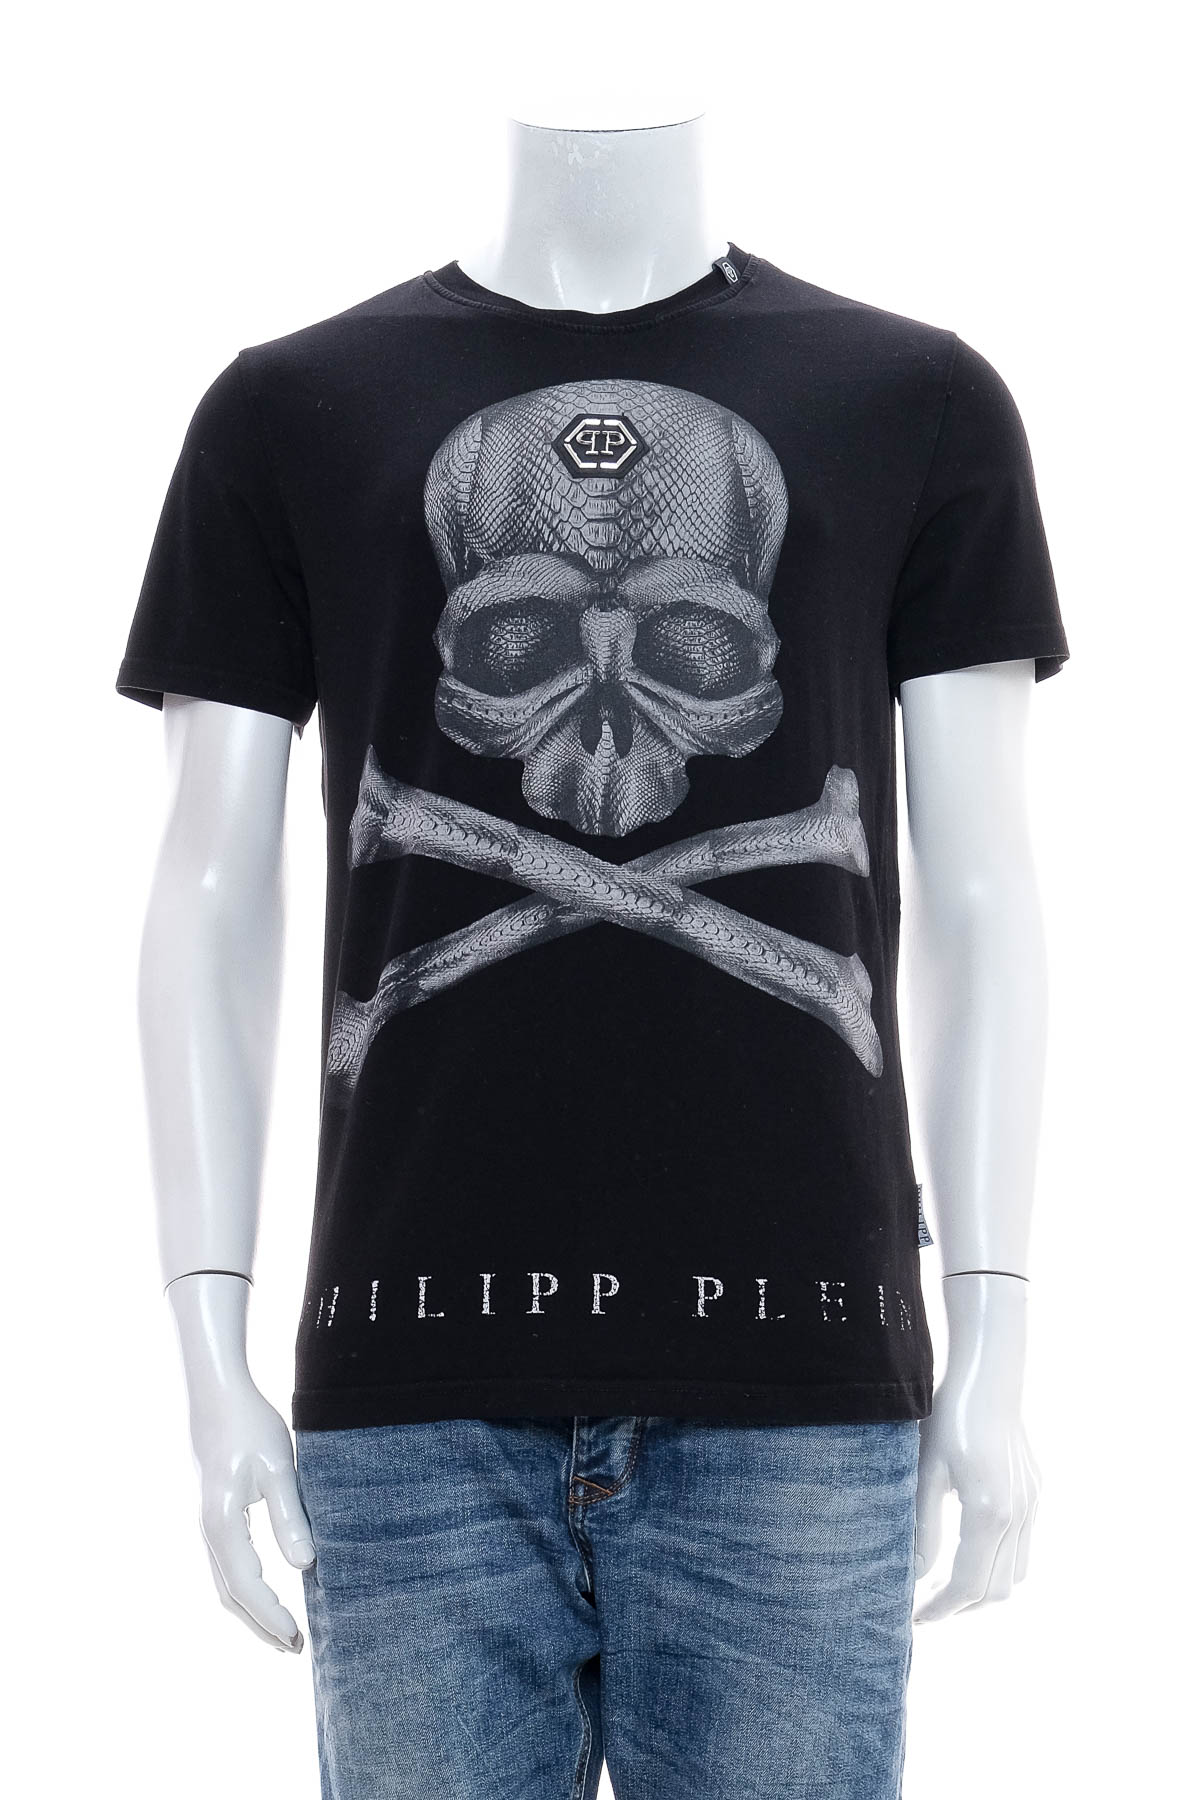 Ανδρικό μπλουζάκι - PHILIPP PLEIN - 0